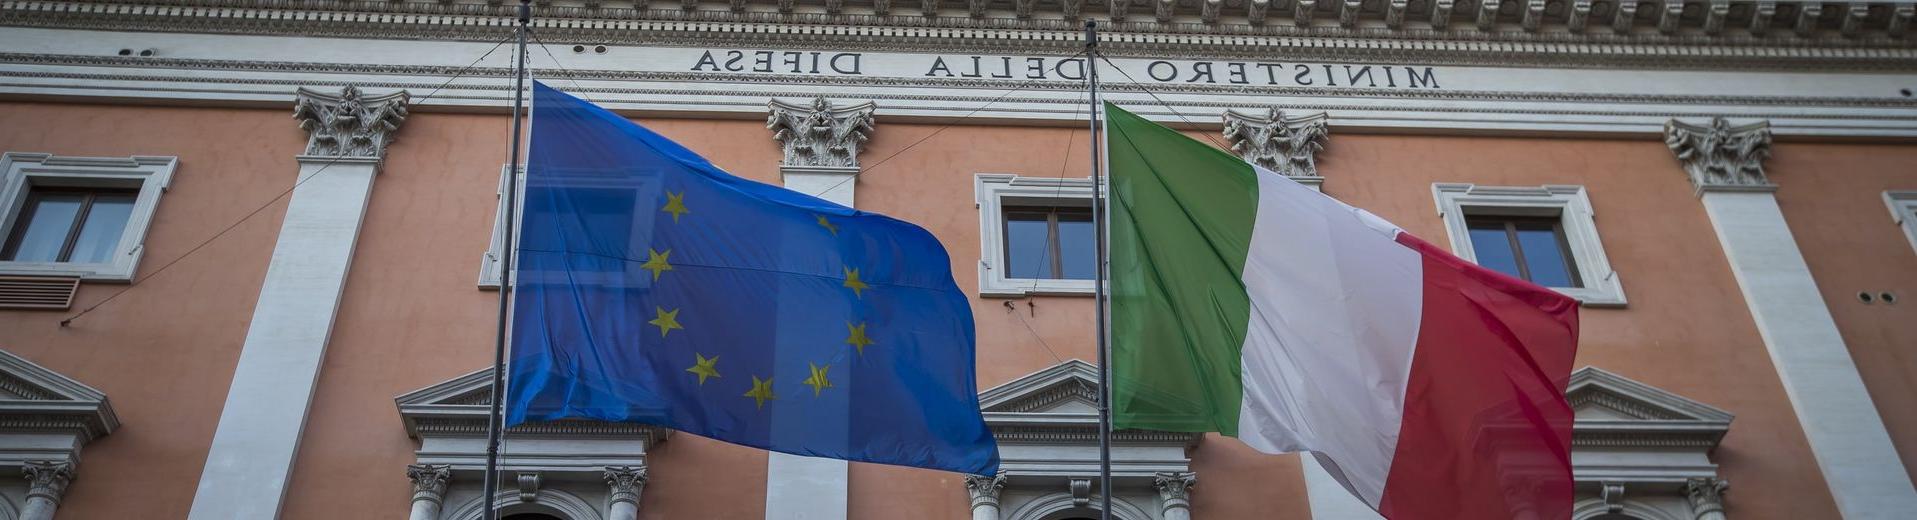 意大利国旗在罗马一座历史建筑前飘扬.